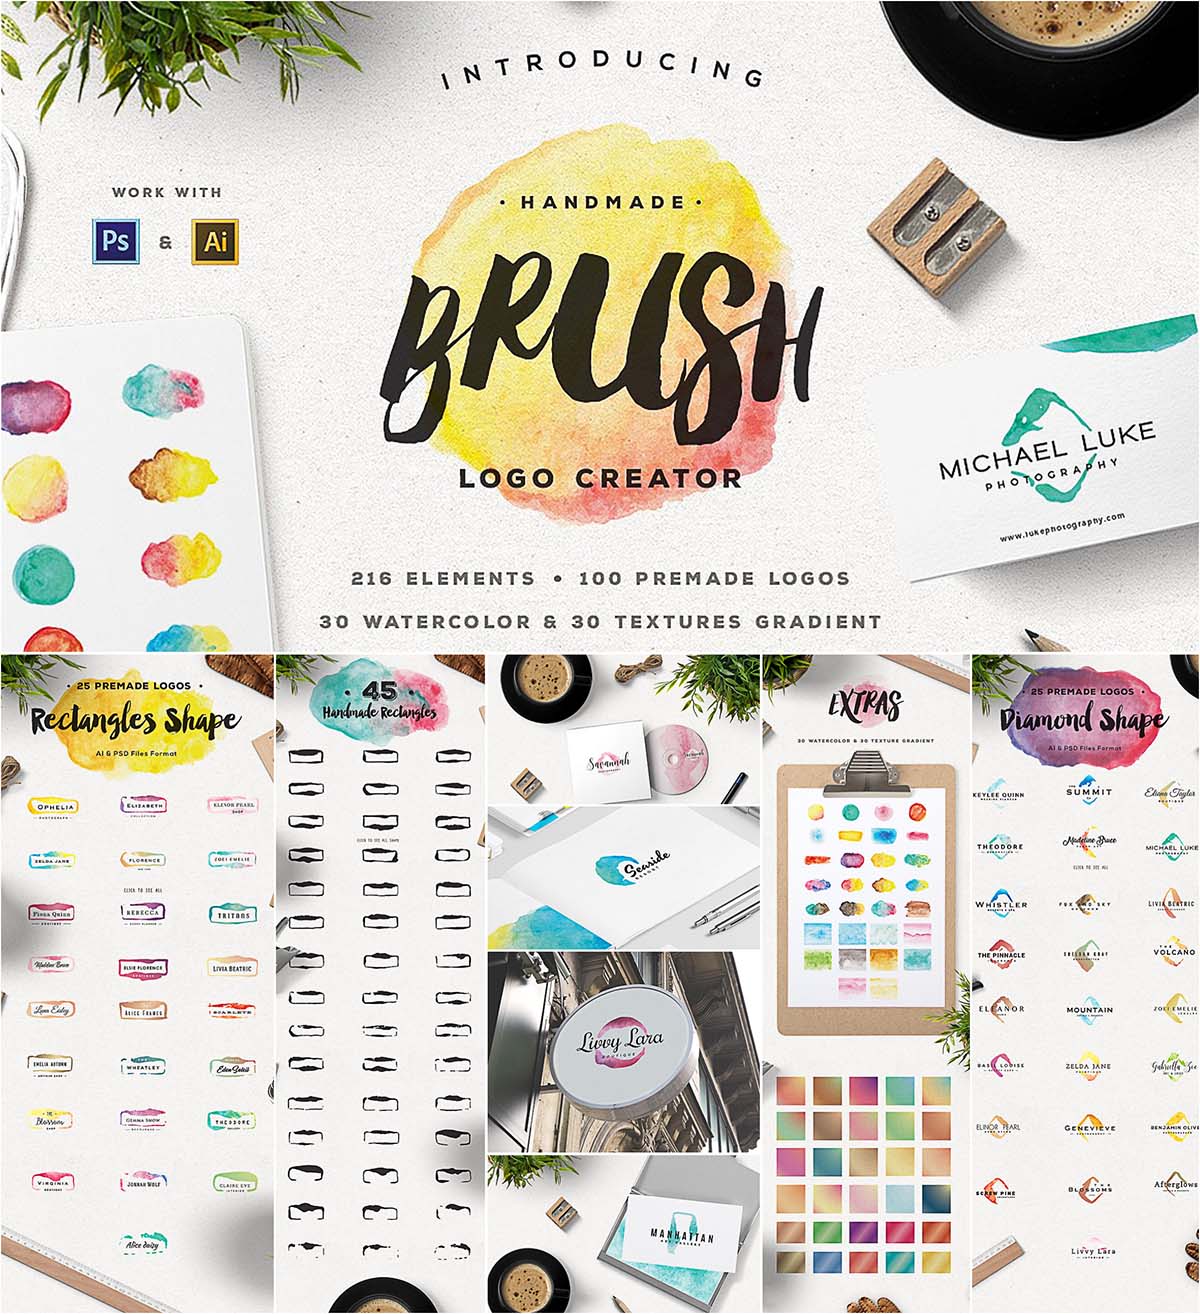 Brush logo creator